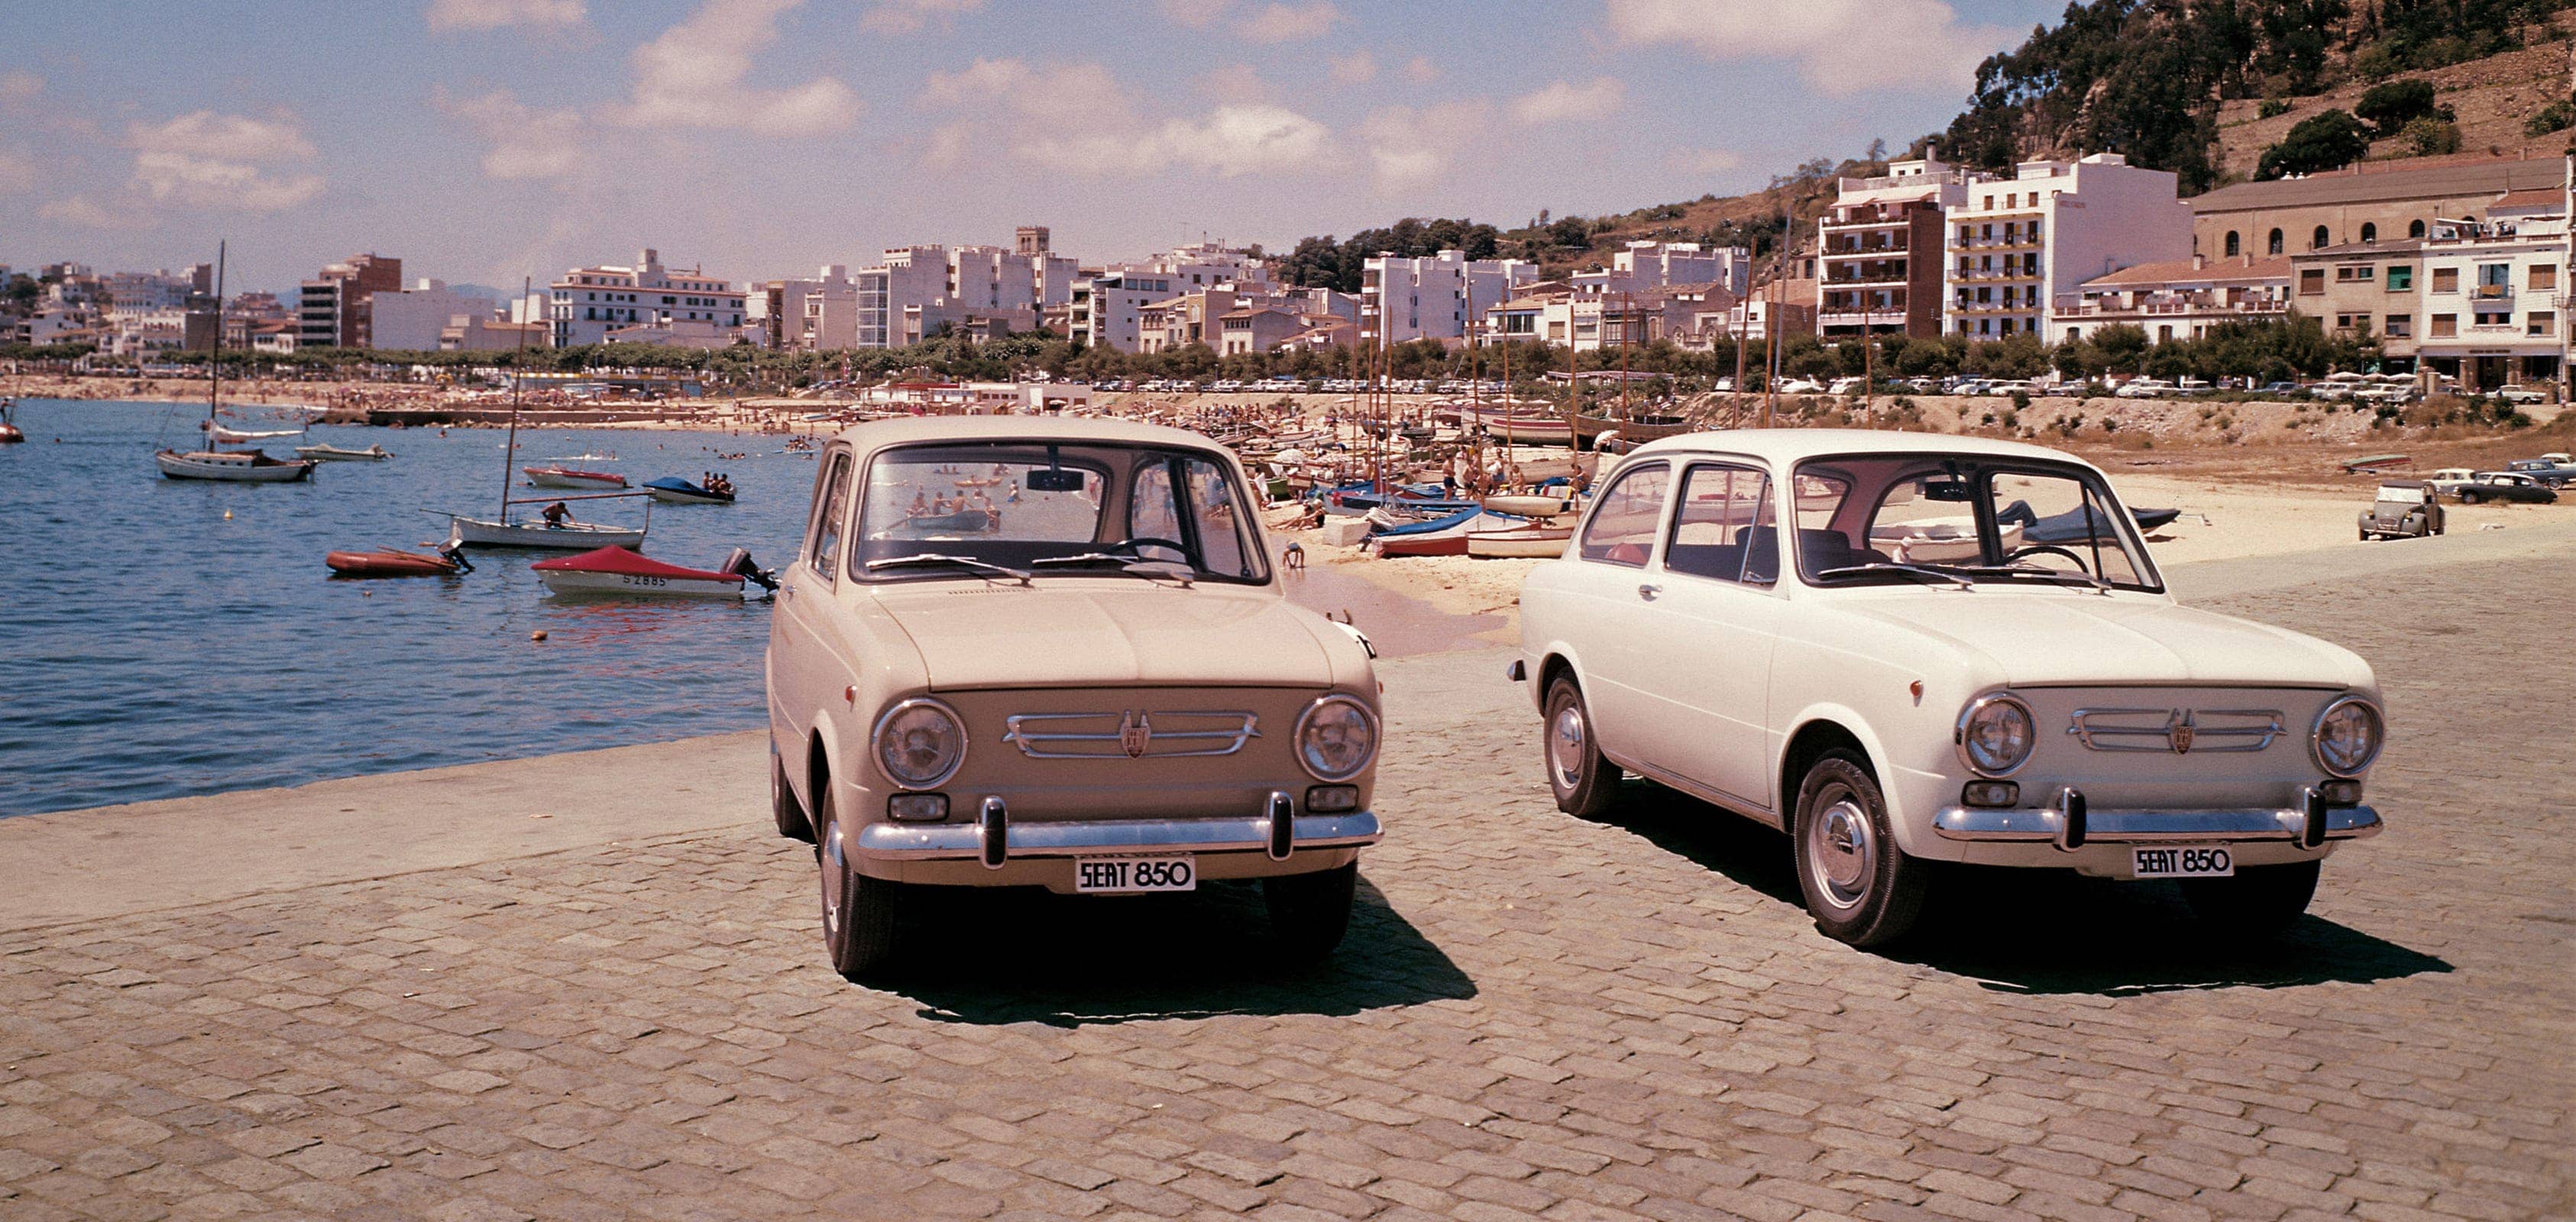 SEAT varumärke historia 1960-talet export - SEAT 850 bilar på standen översiktsbild